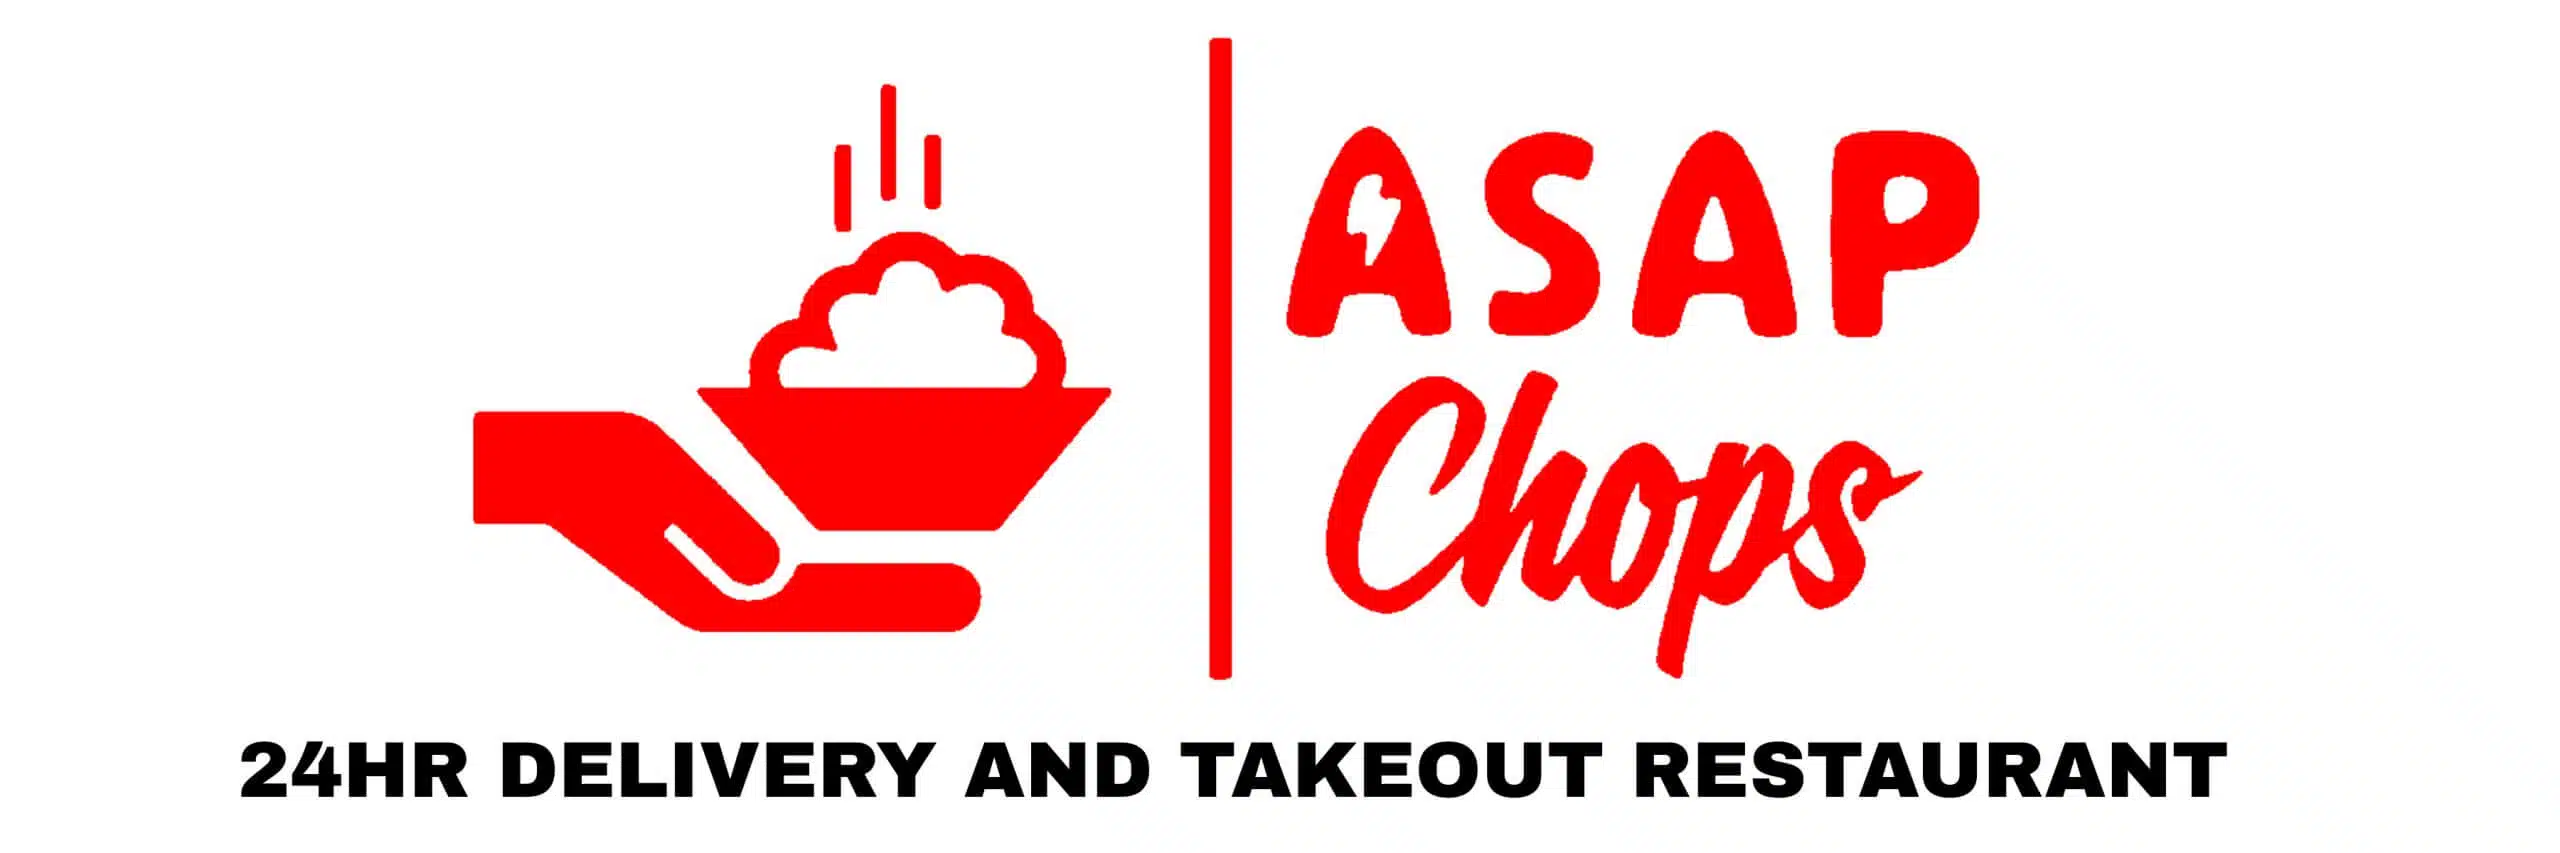 ASAPChops Logo